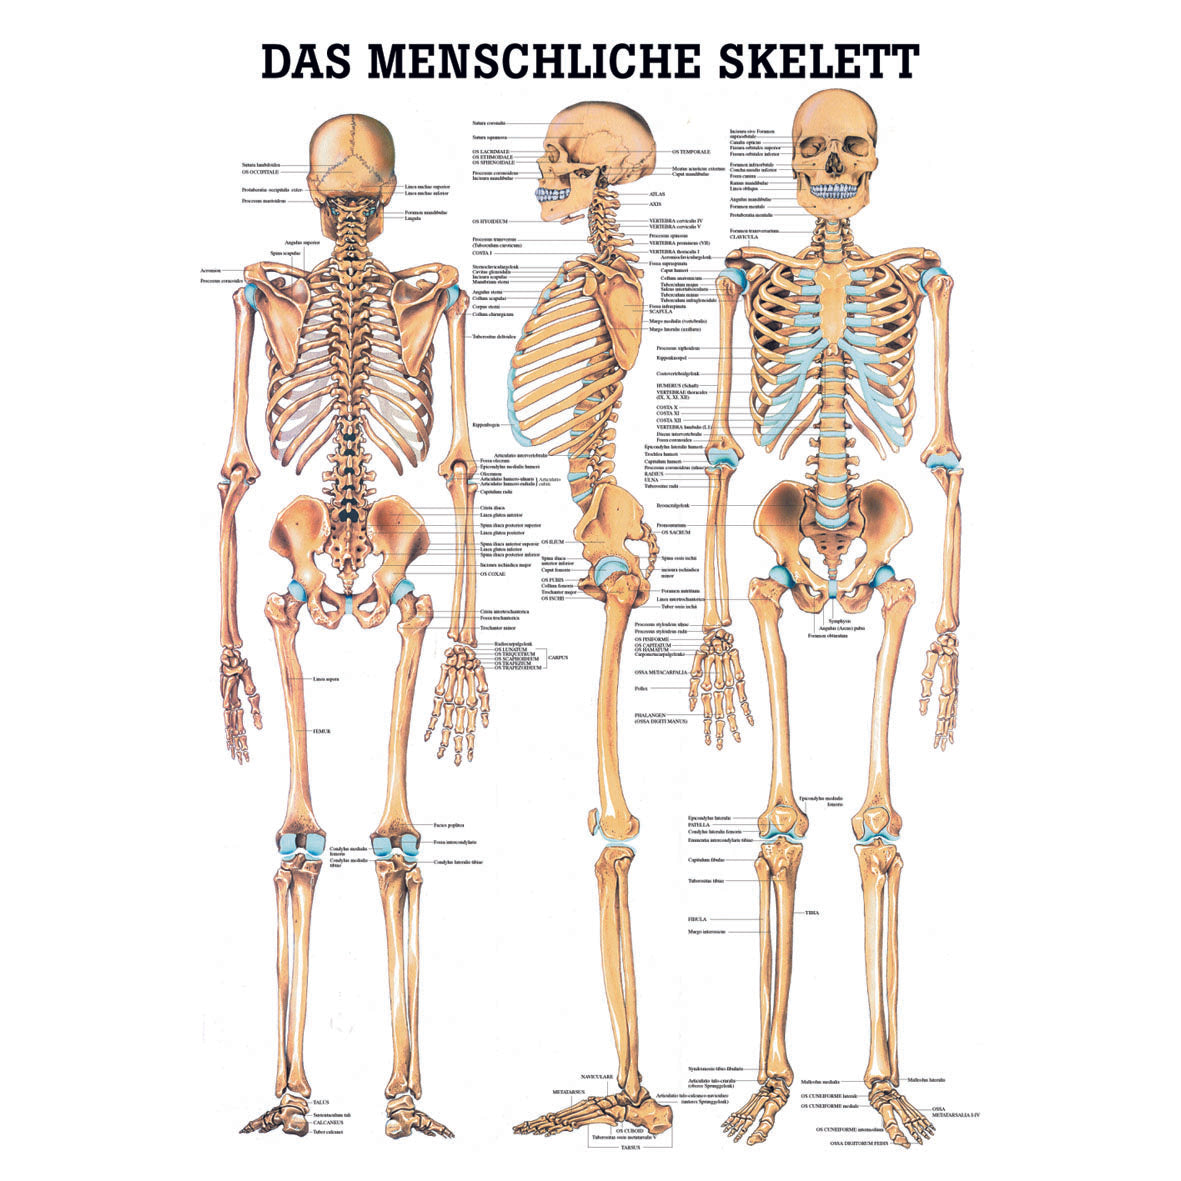 Anatomisches Miniposter "Das menschliche Skelett"